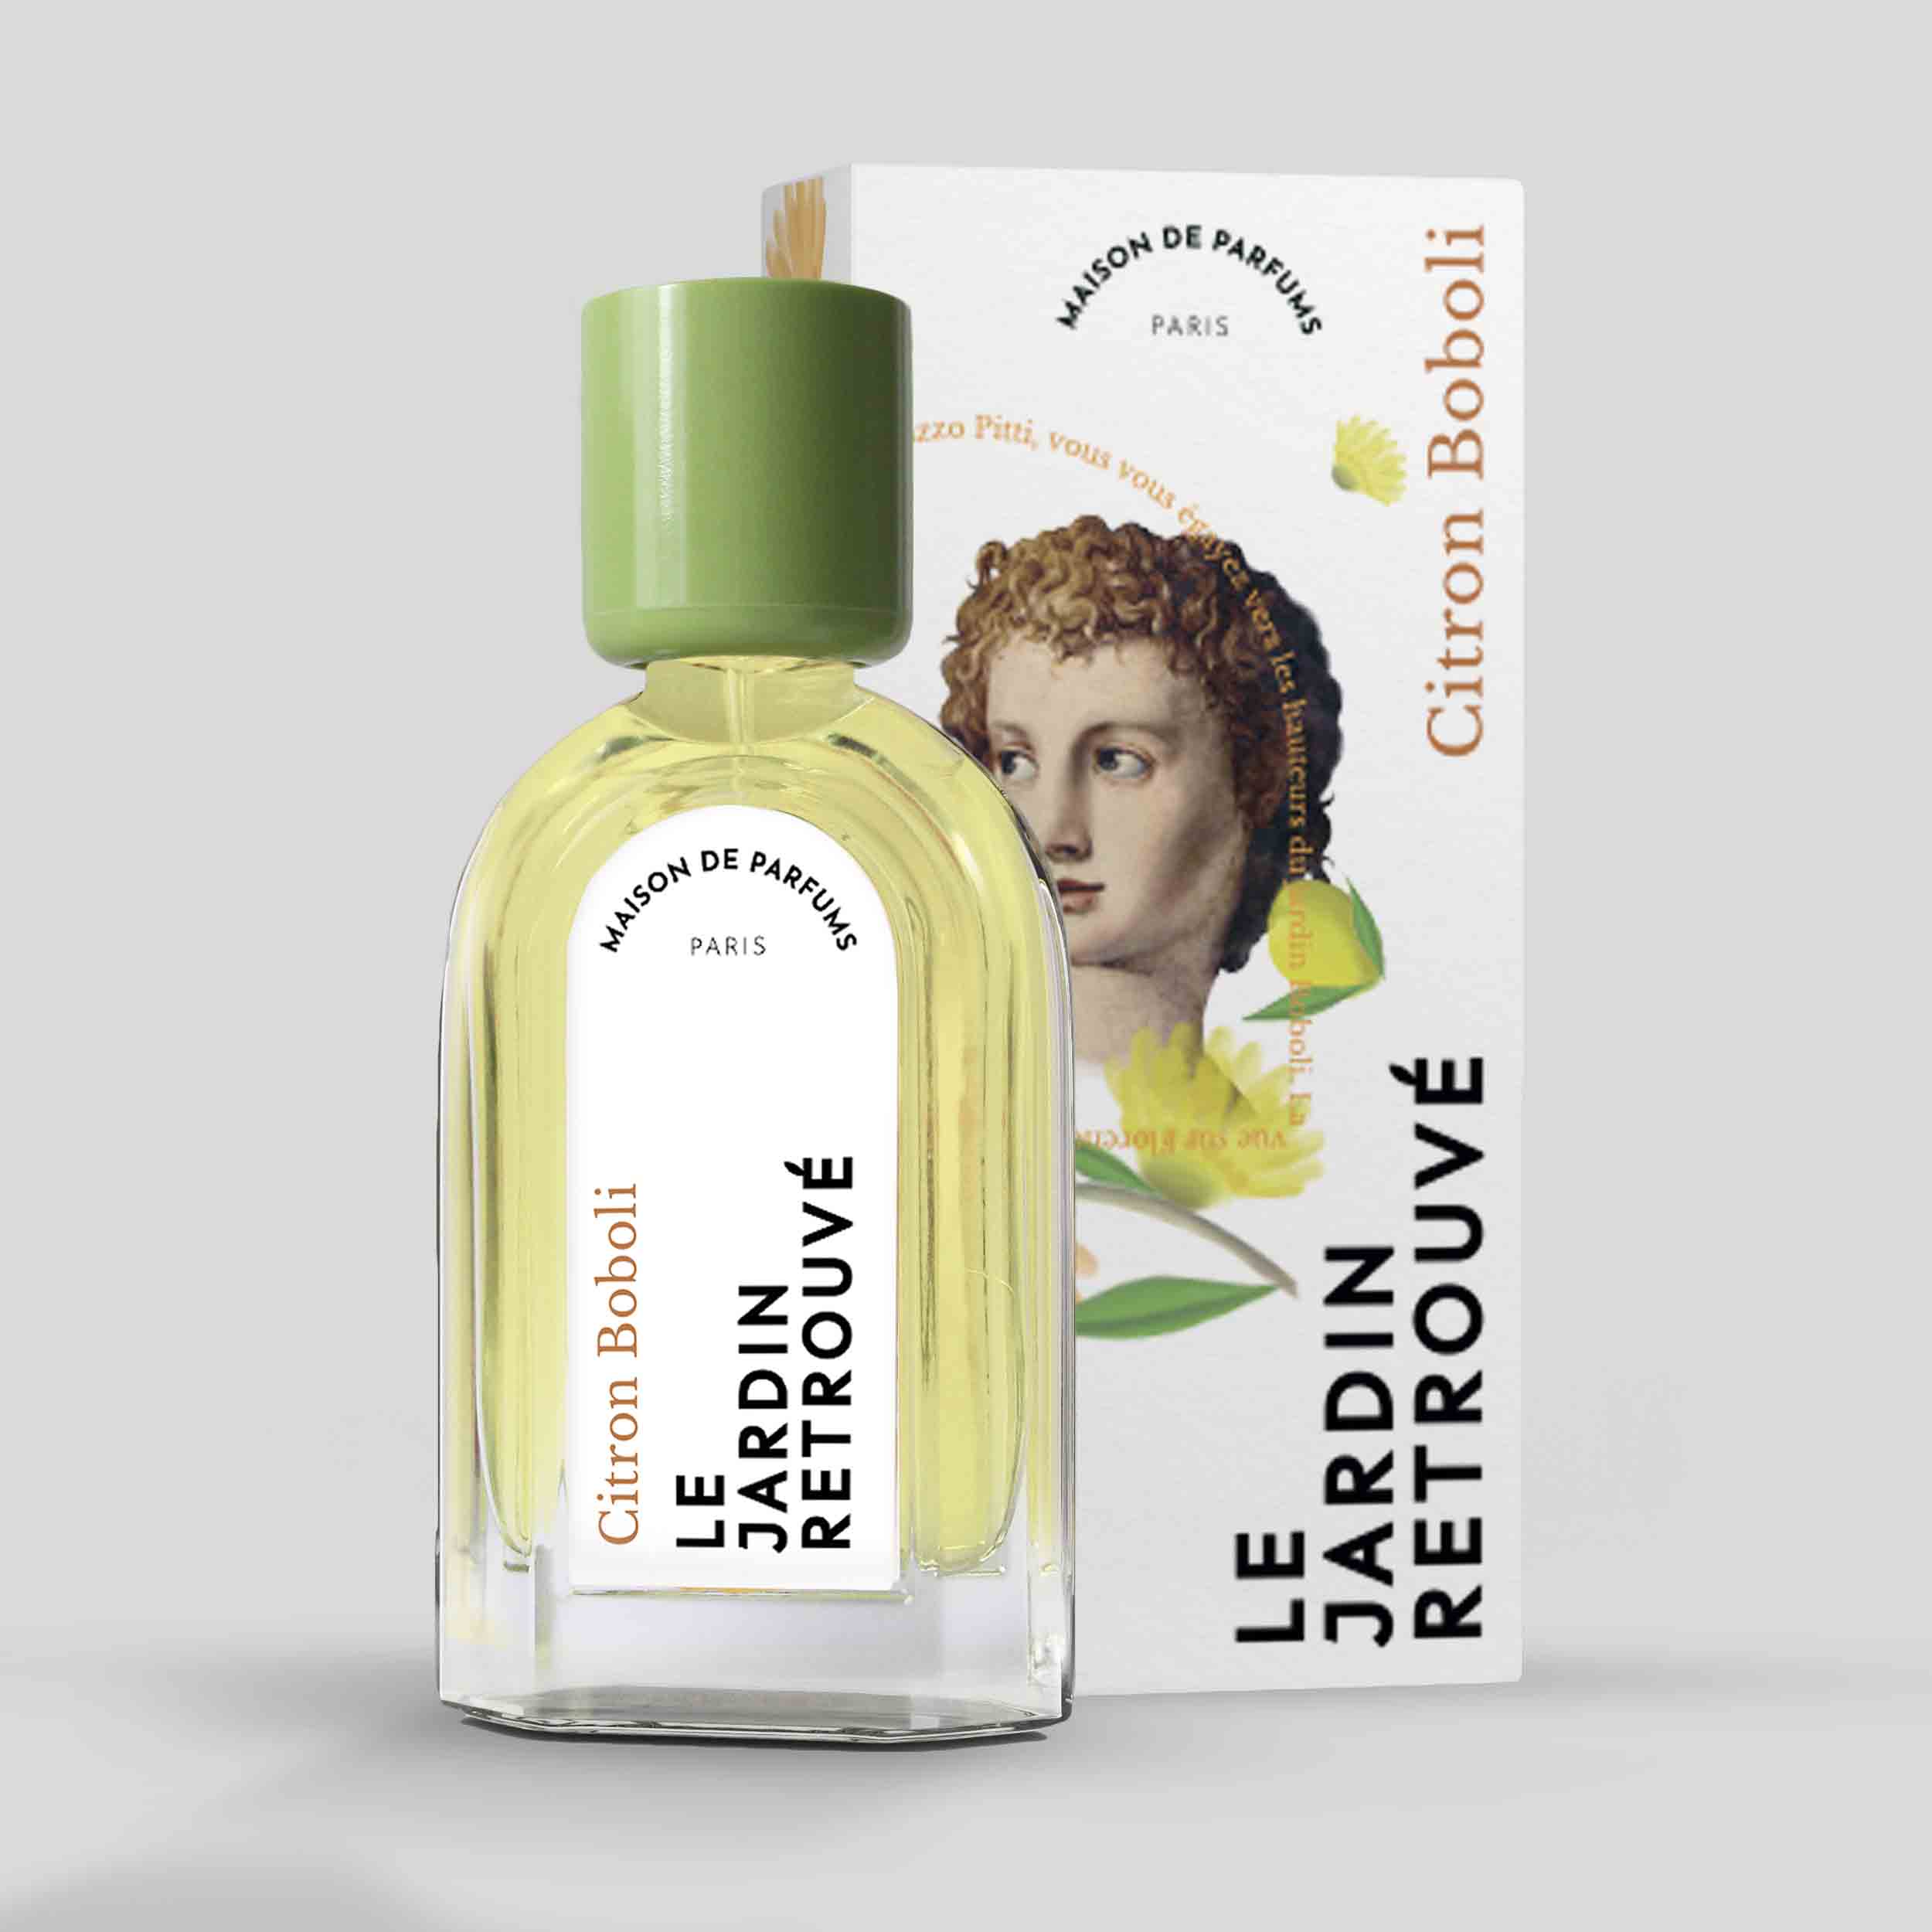 Citron Boboli Eau de Parfum 50ml Bottle and Box by Le Jardin Retrouvé